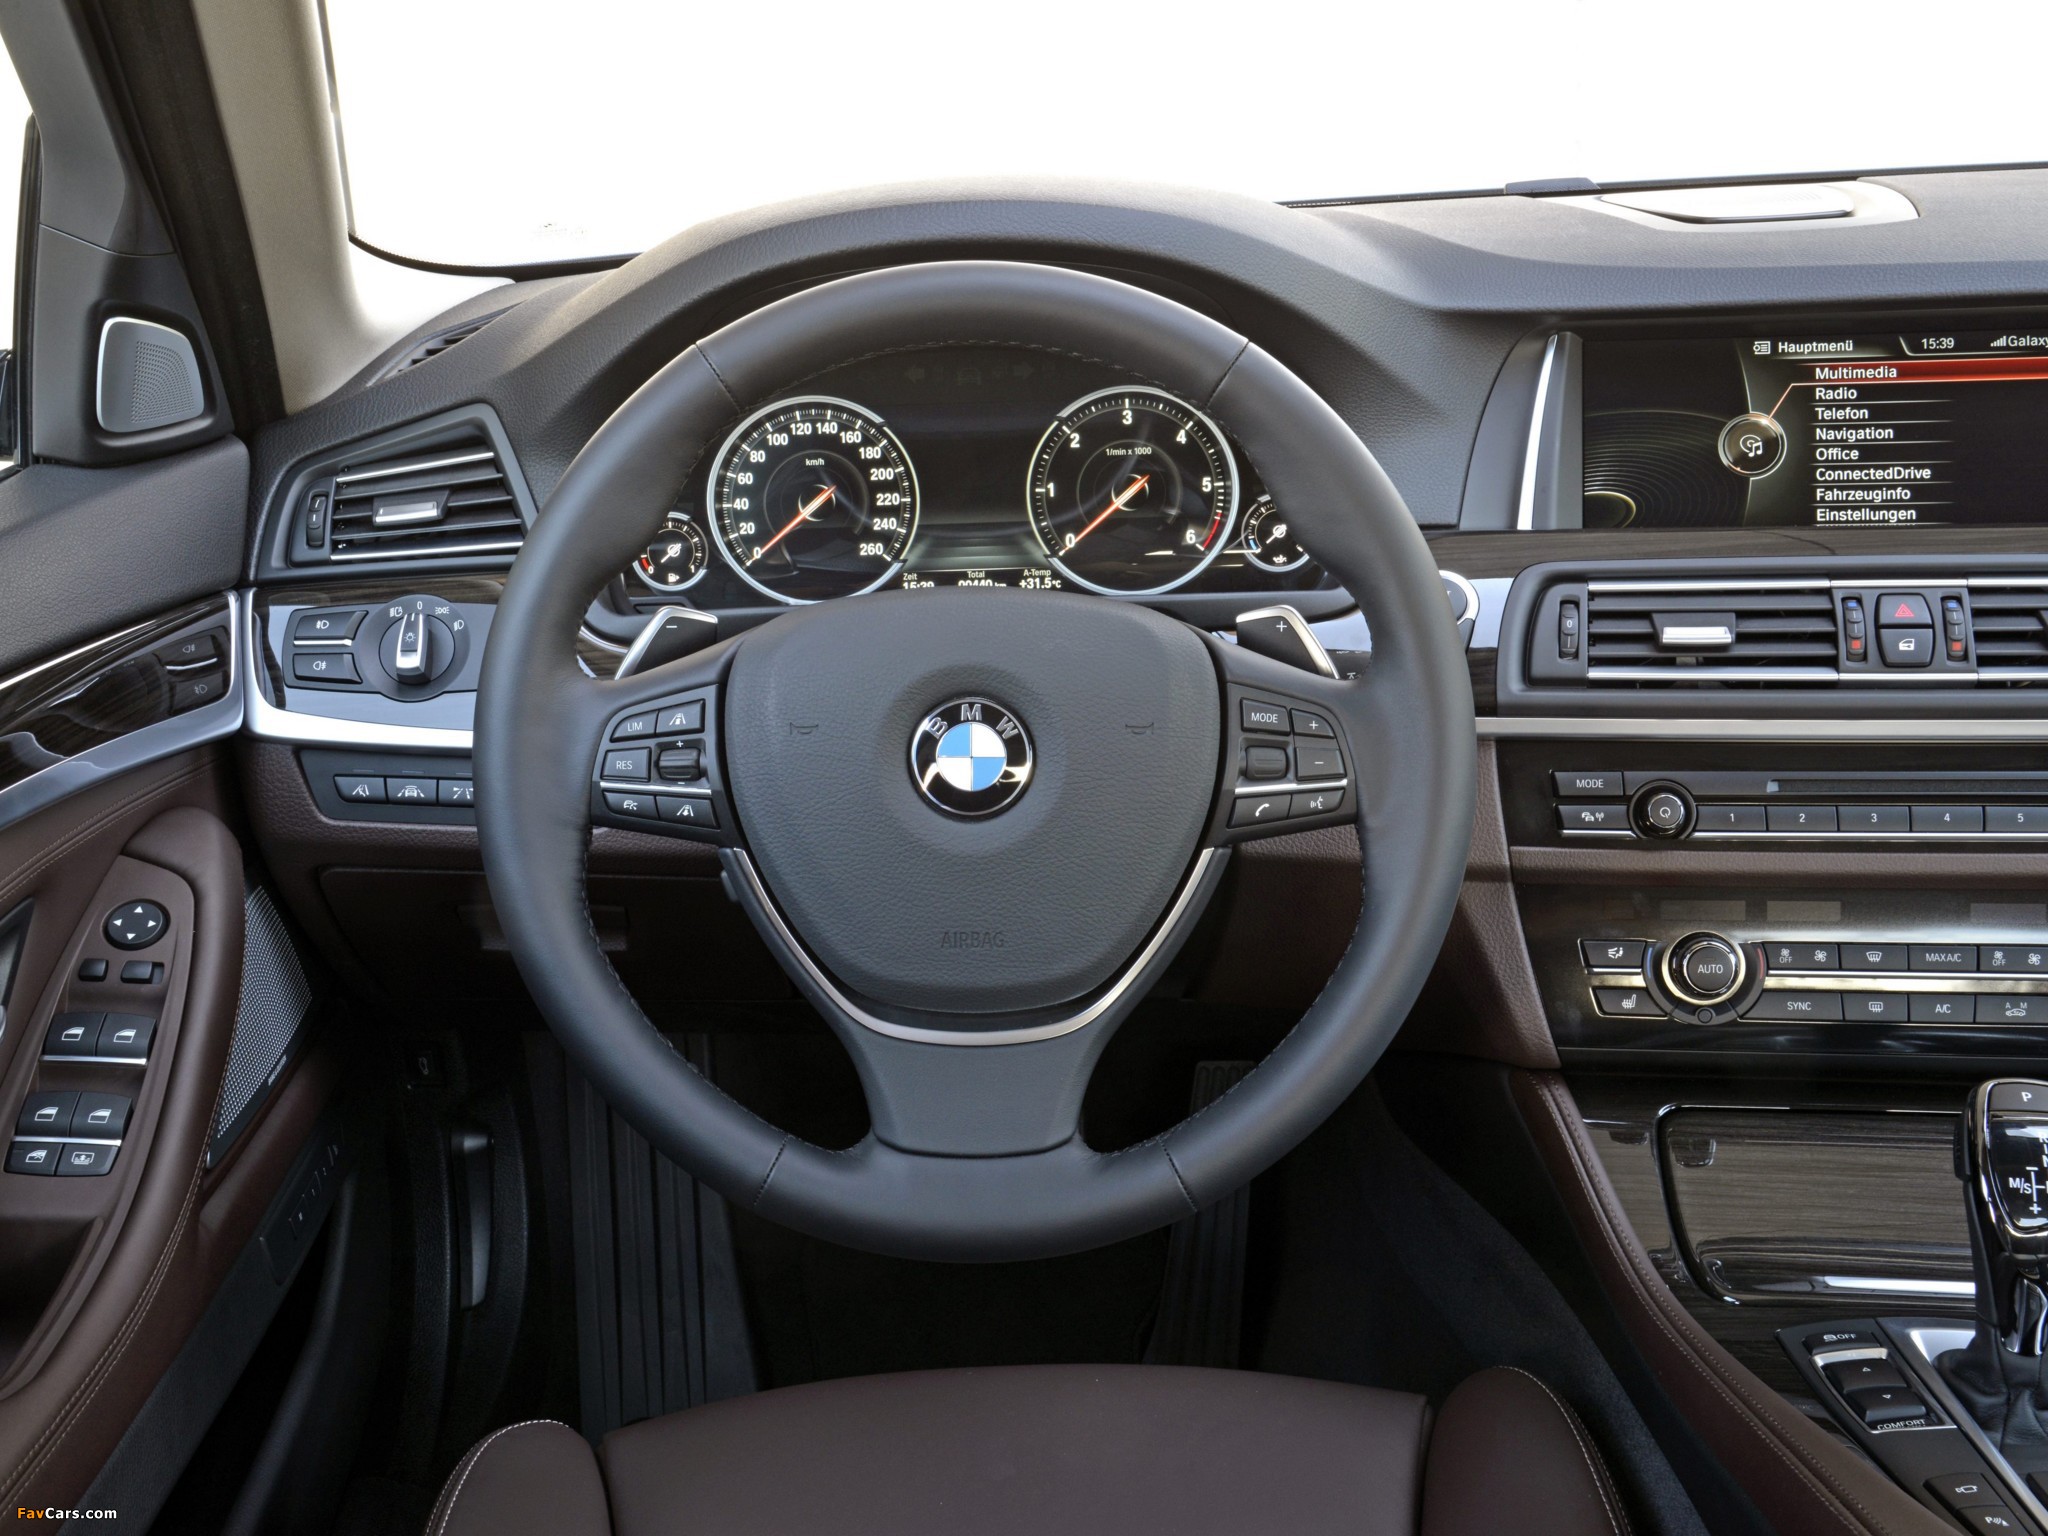 BMW 530d Sedan Luxury Line (F10) 2013 pictures (2048 x 1536)